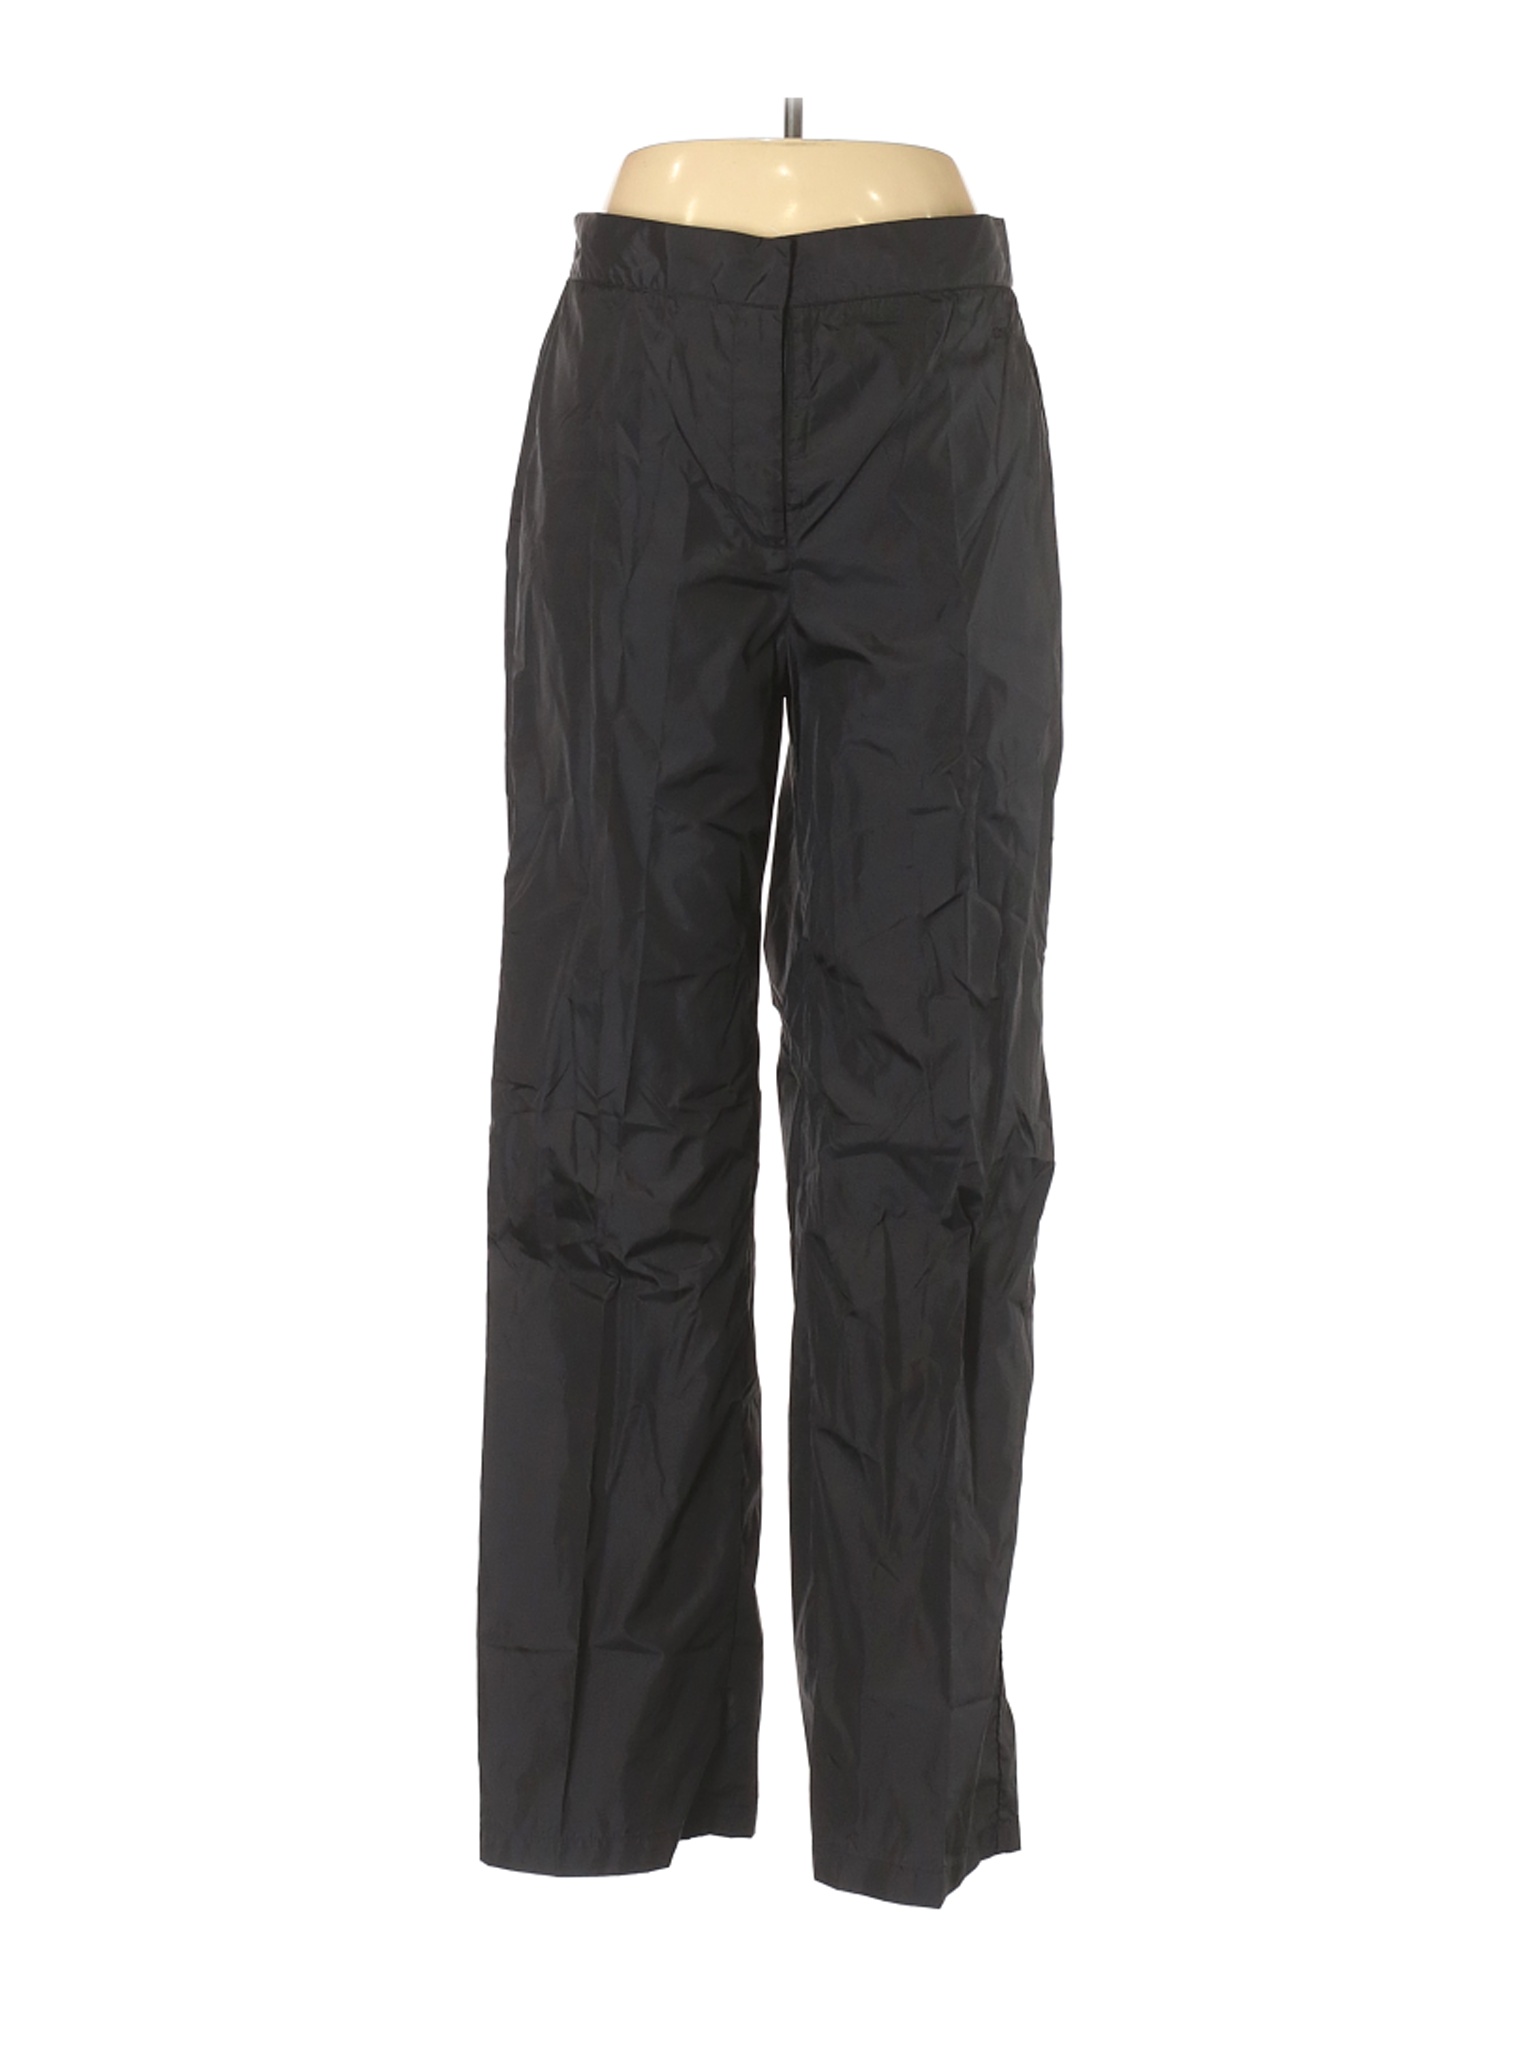 DKNY Women Black Active Pants L | eBay